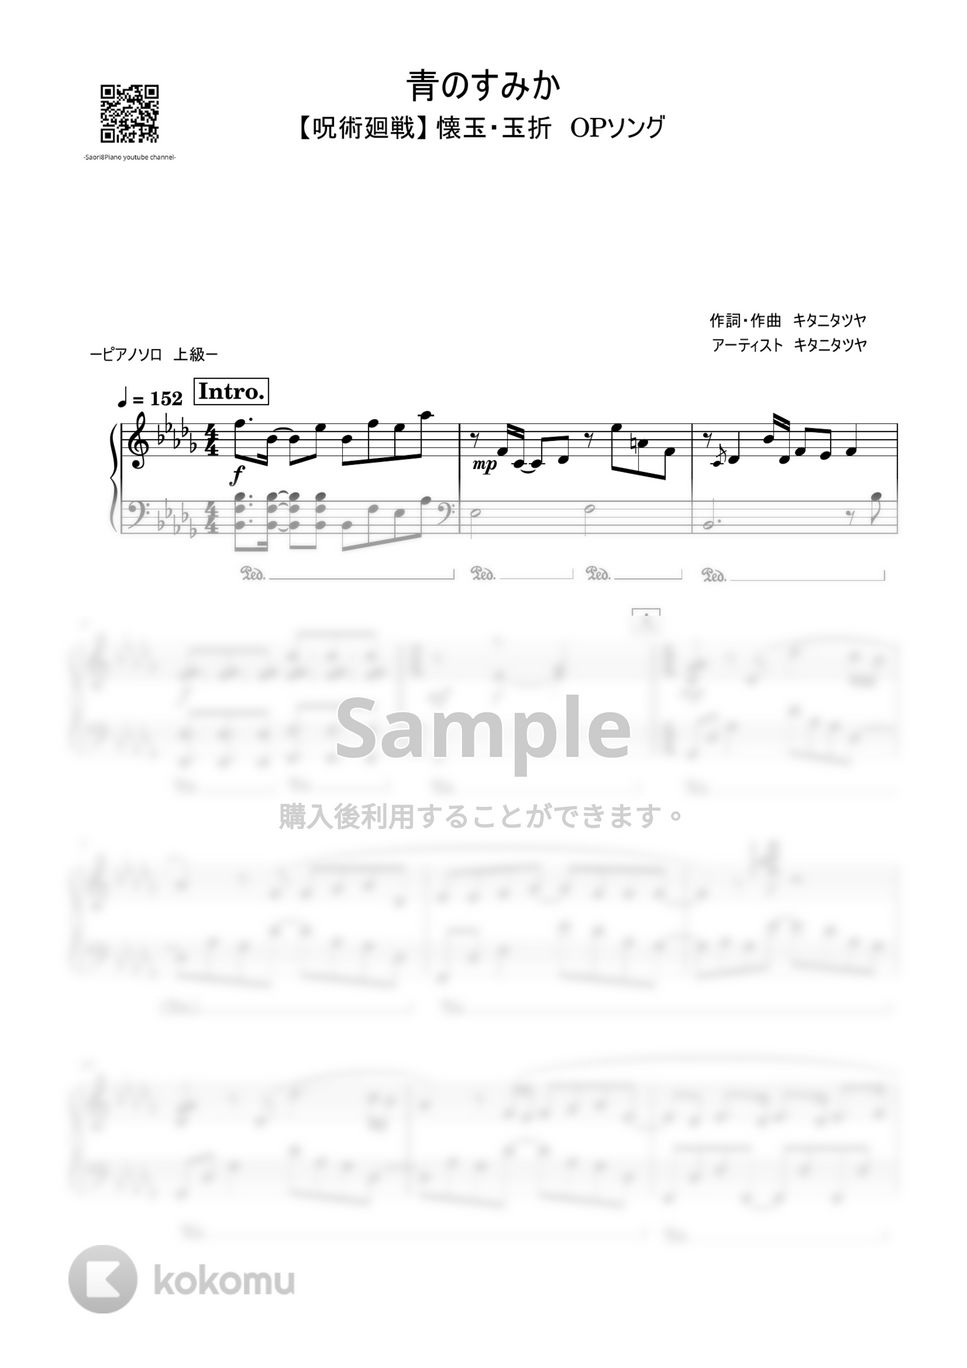 キタニタツヤ - 青のすみか (呪術廻戦『懐玉・玉折』/上級レベル) by Saori8Piano